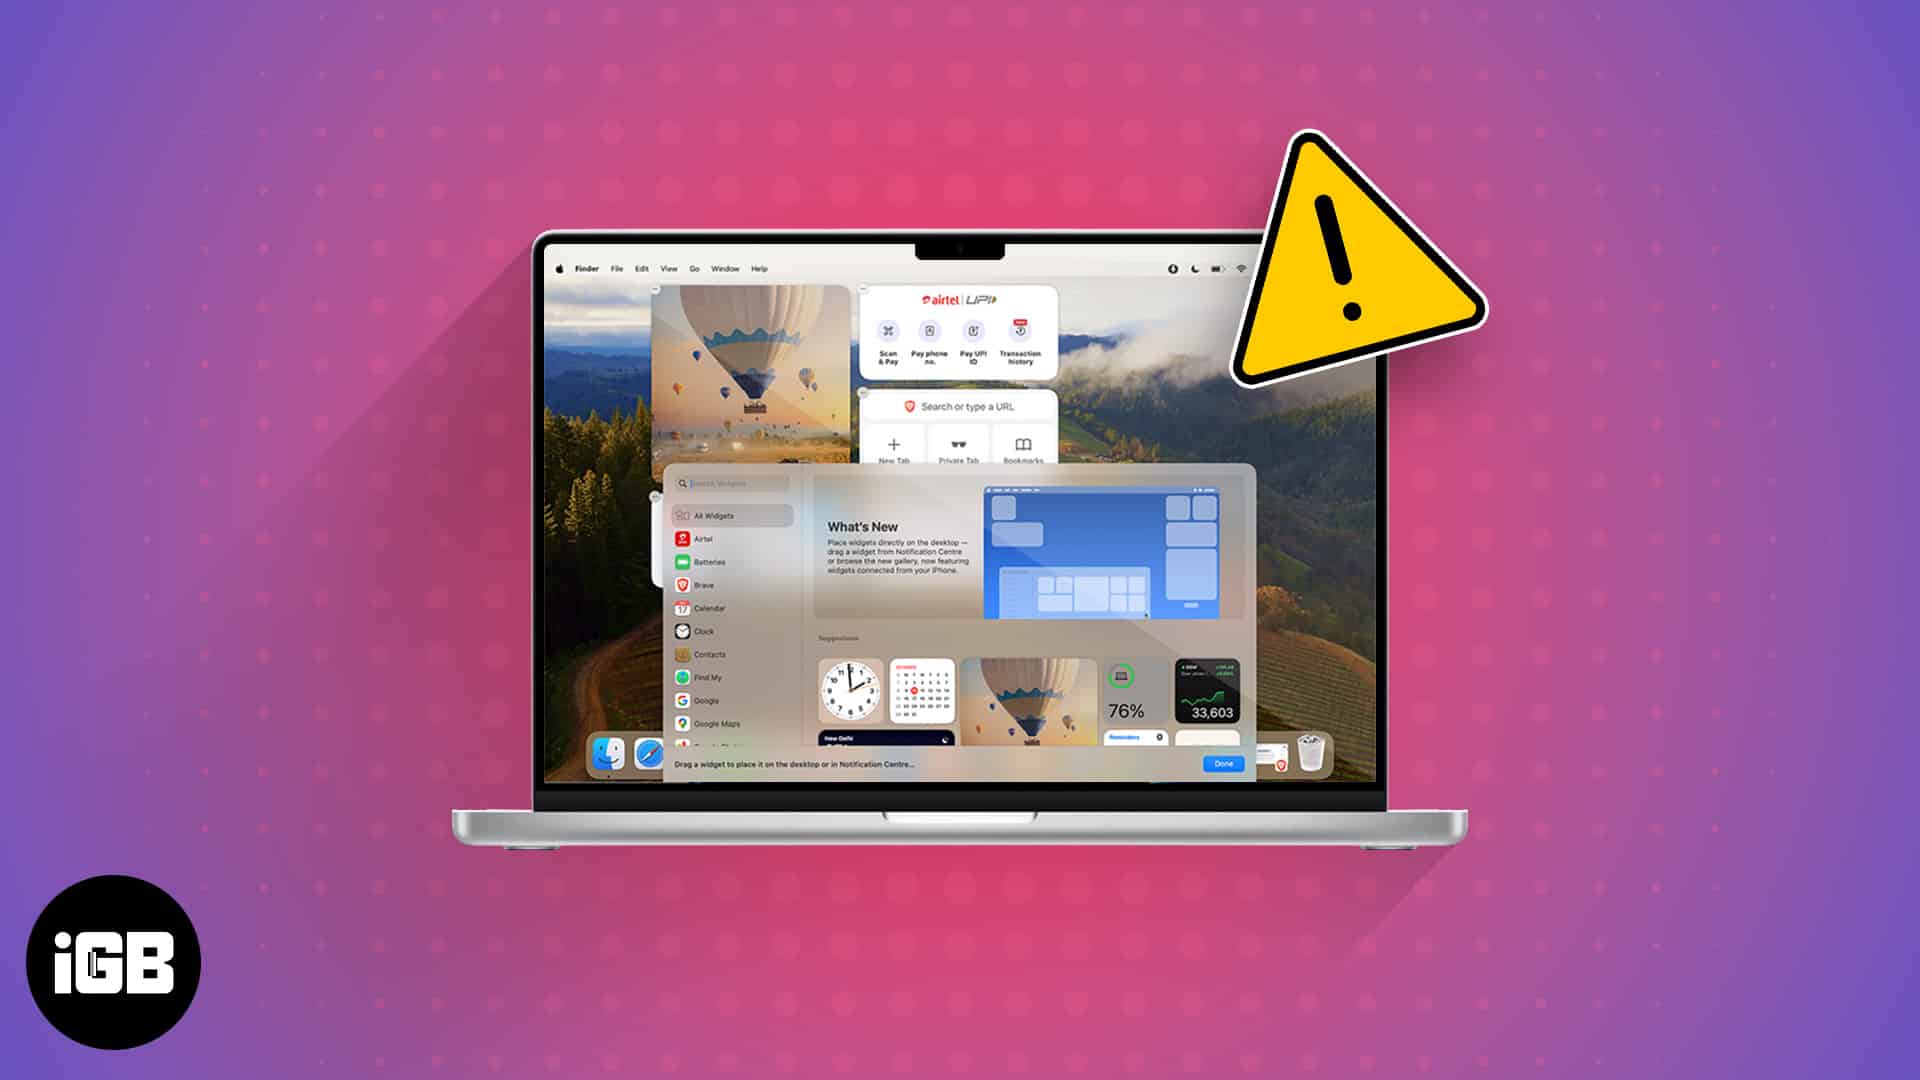 macOS Sonoma desktop widgets not working? 11 Ways to fix!